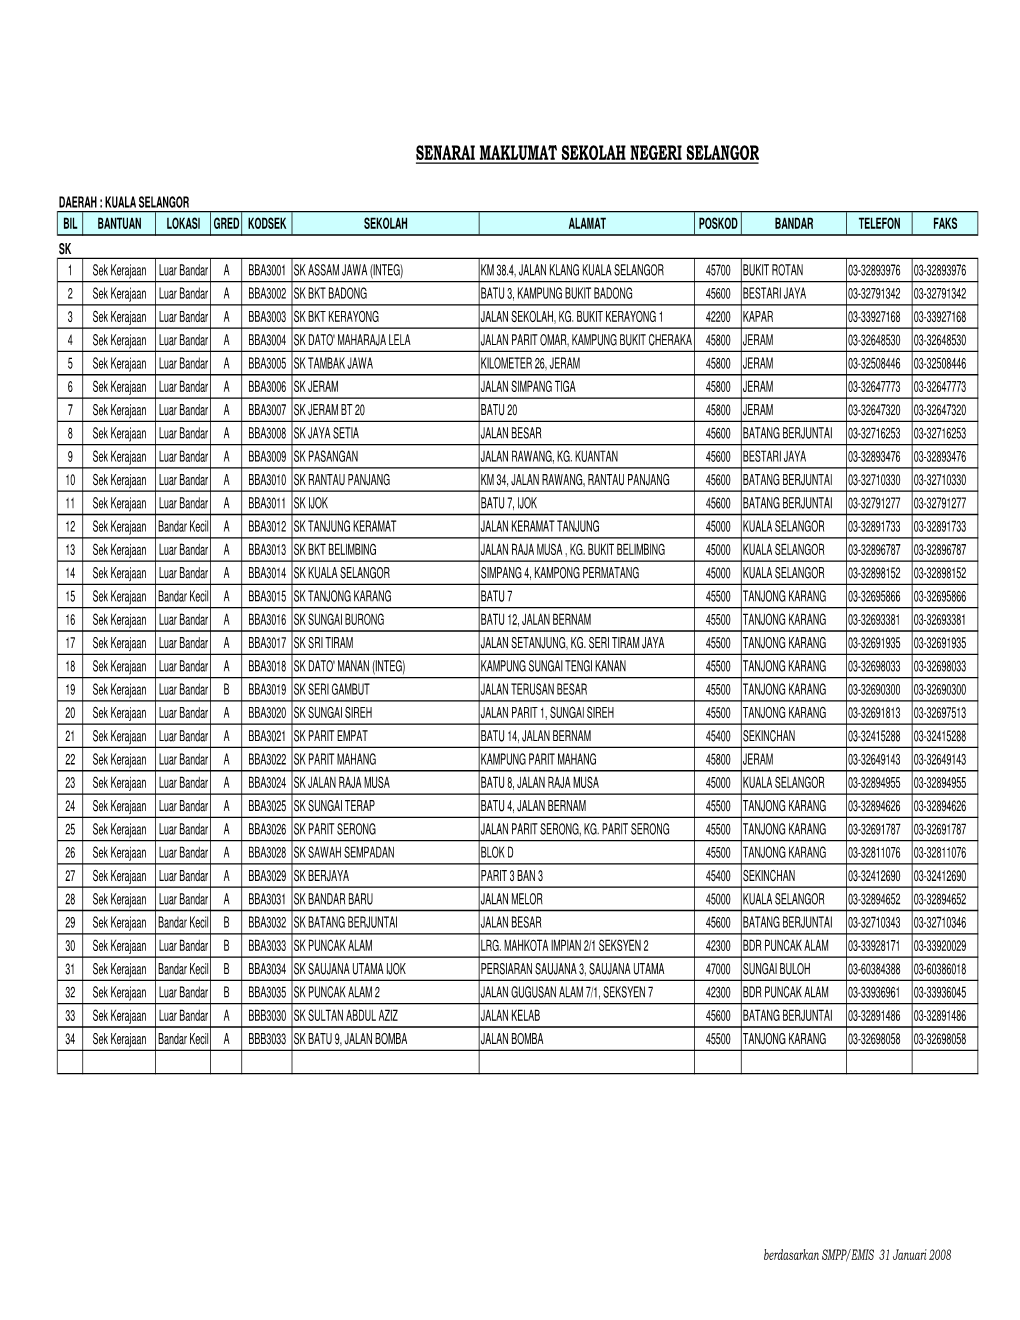 Senarai Sekolah Di Daerah Kuala Selangor